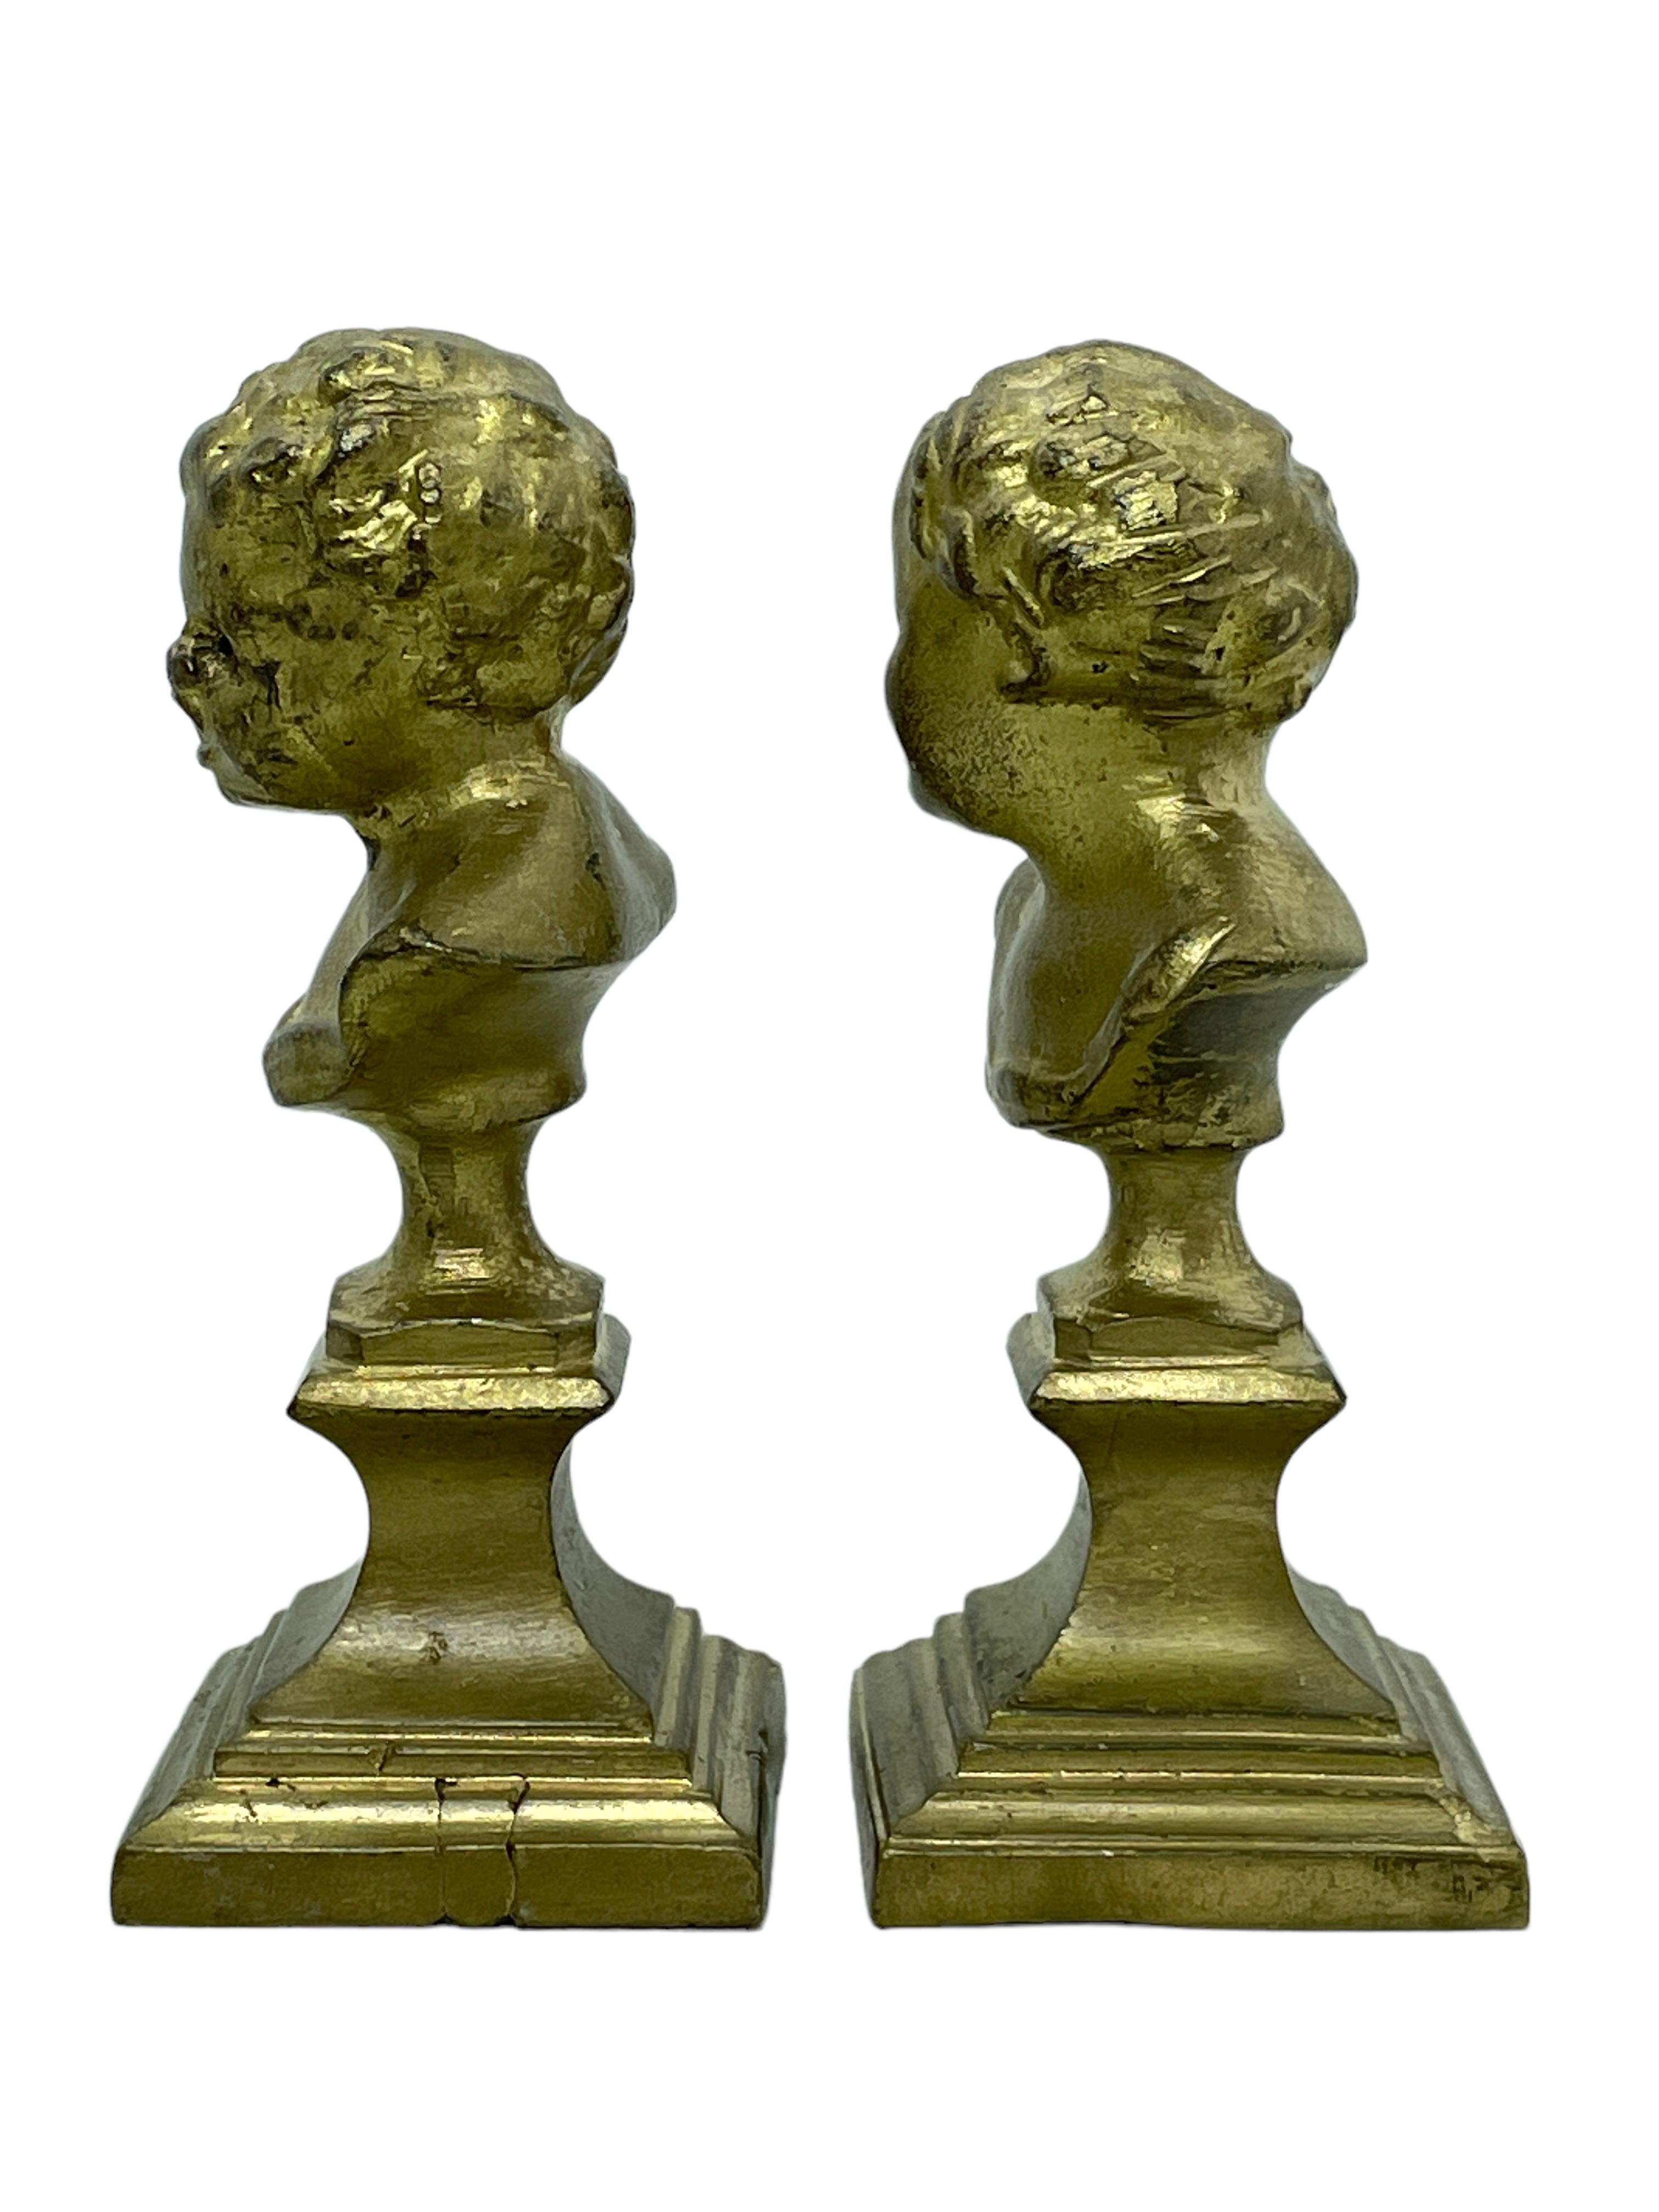 Une paire de statues de buste décoratives classiques. Quelques usures avec une belle patine, mais c'est de l'ancien temps. Fait d'une sorte de métal, nous pensons que c'est du bronze doré. Très décoratif et agréable à exposer dans votre collection